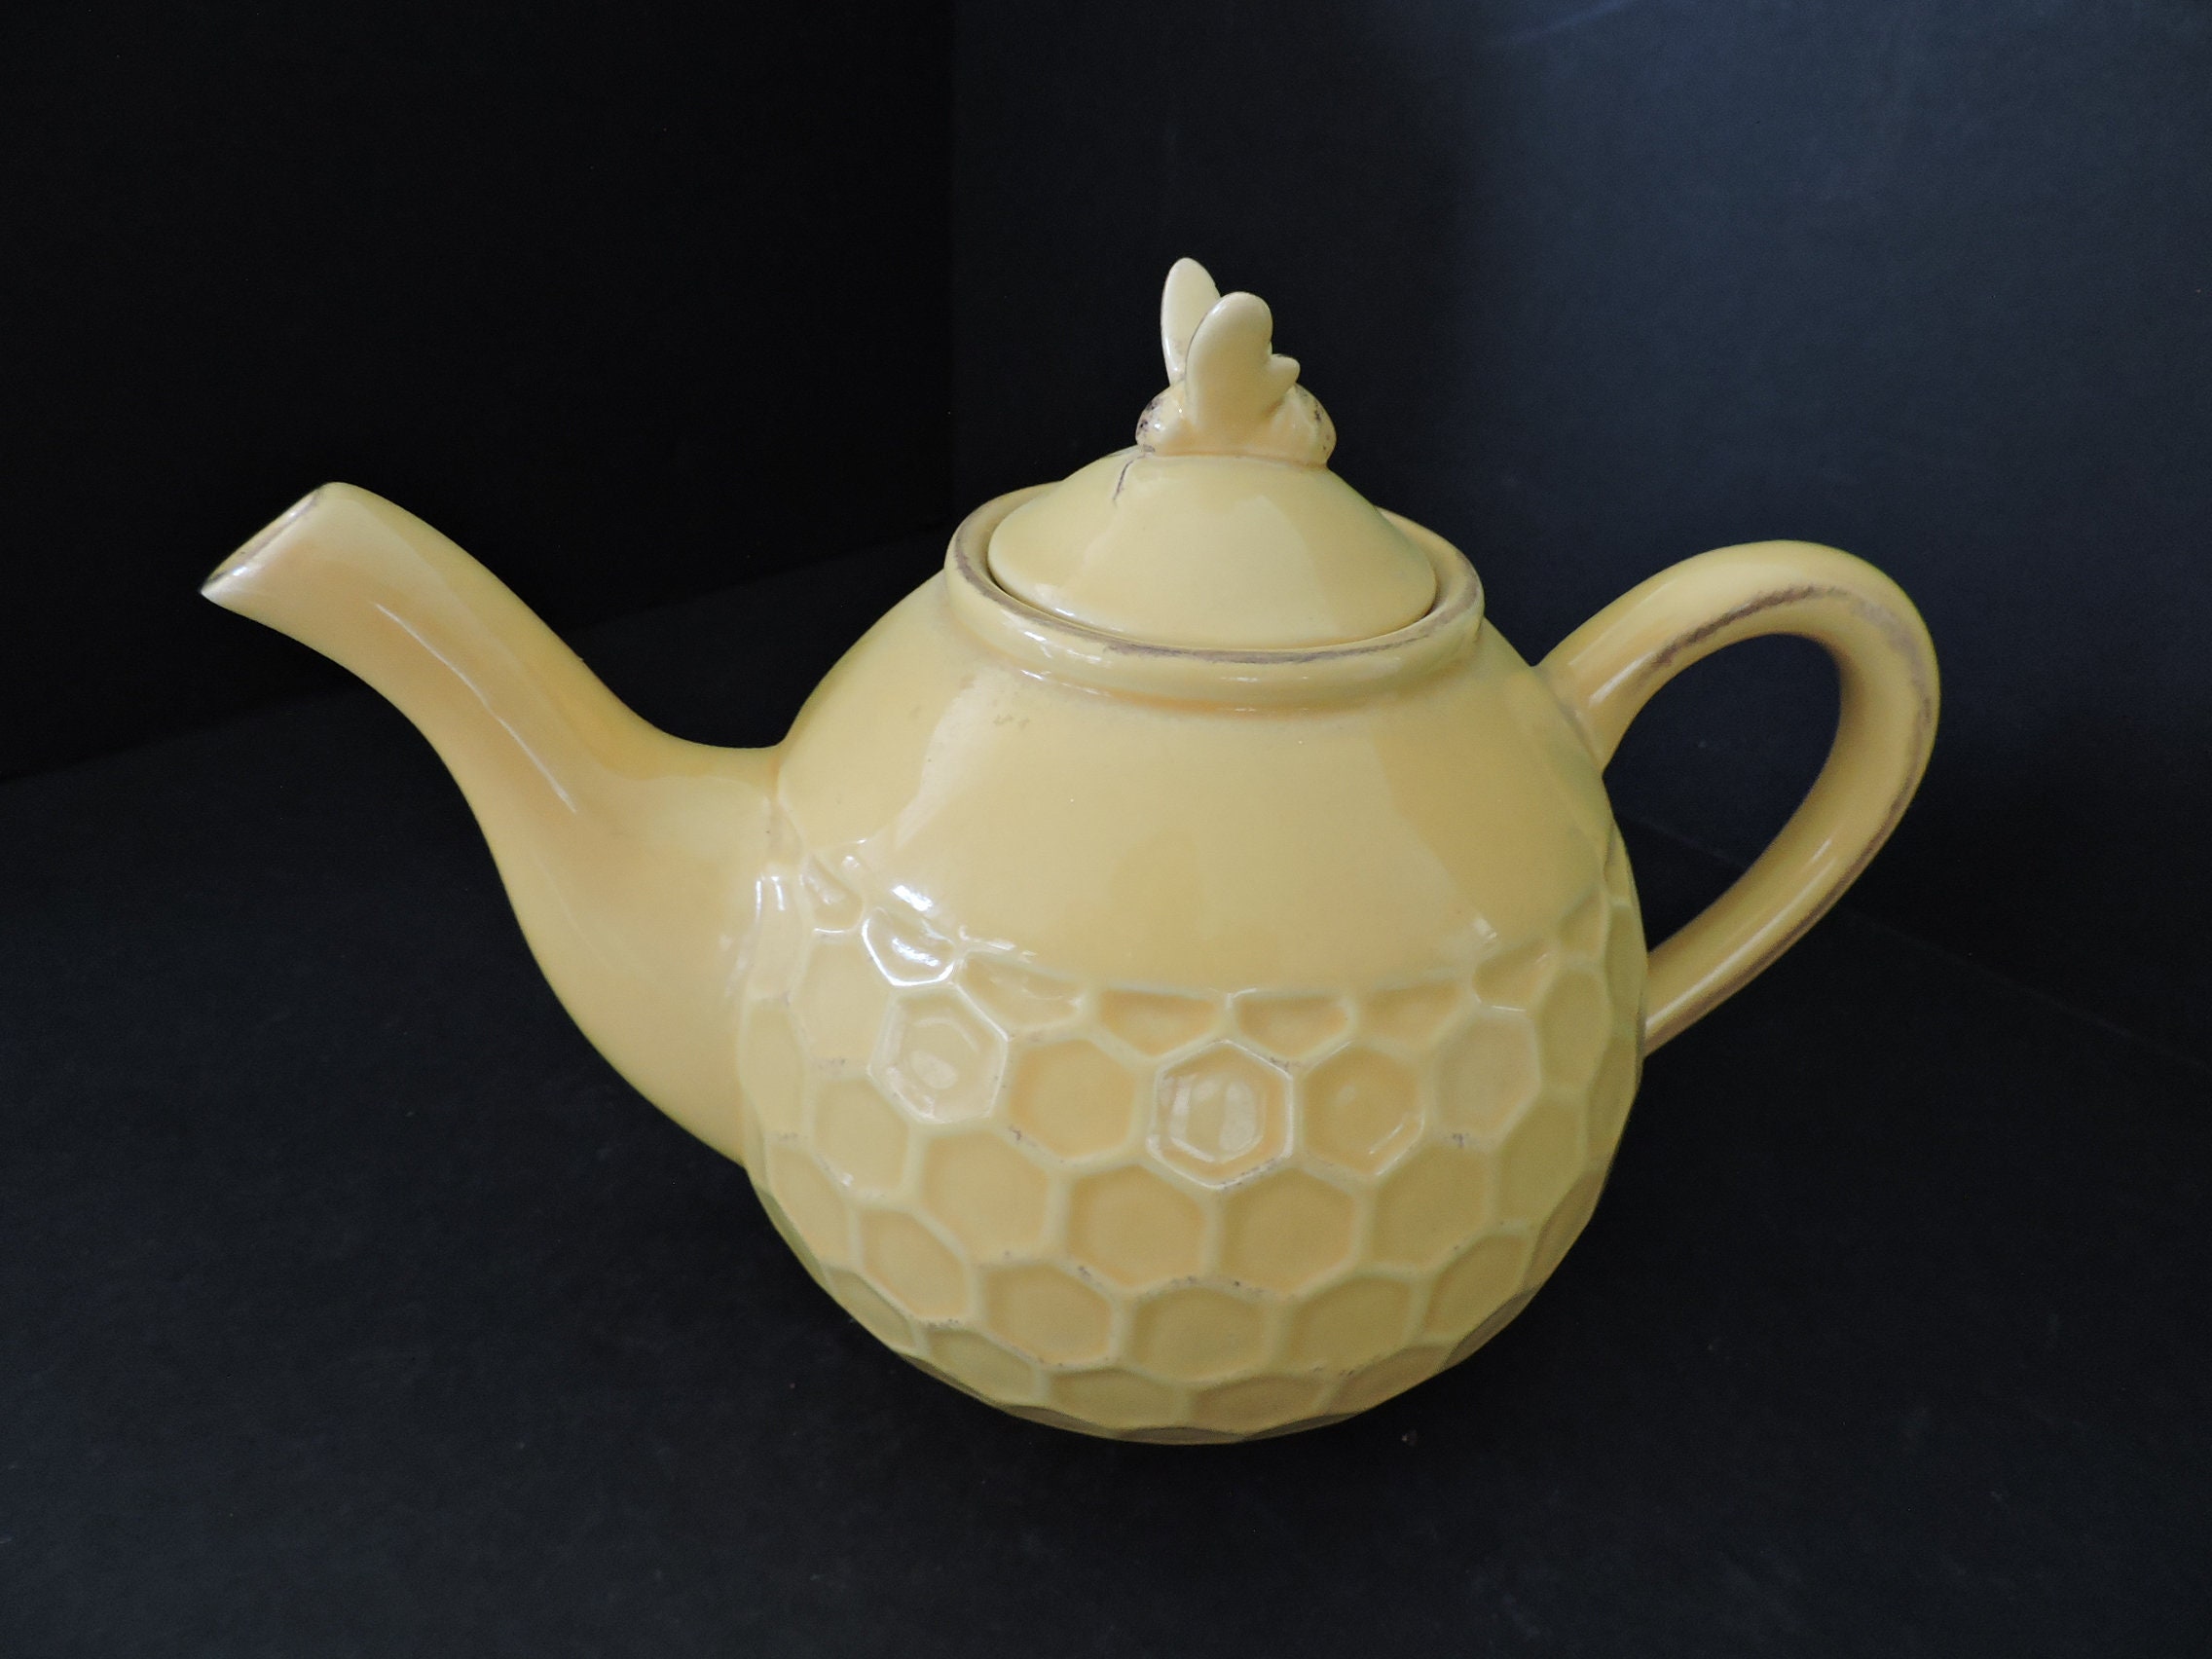 Honeycomb Tea Pot